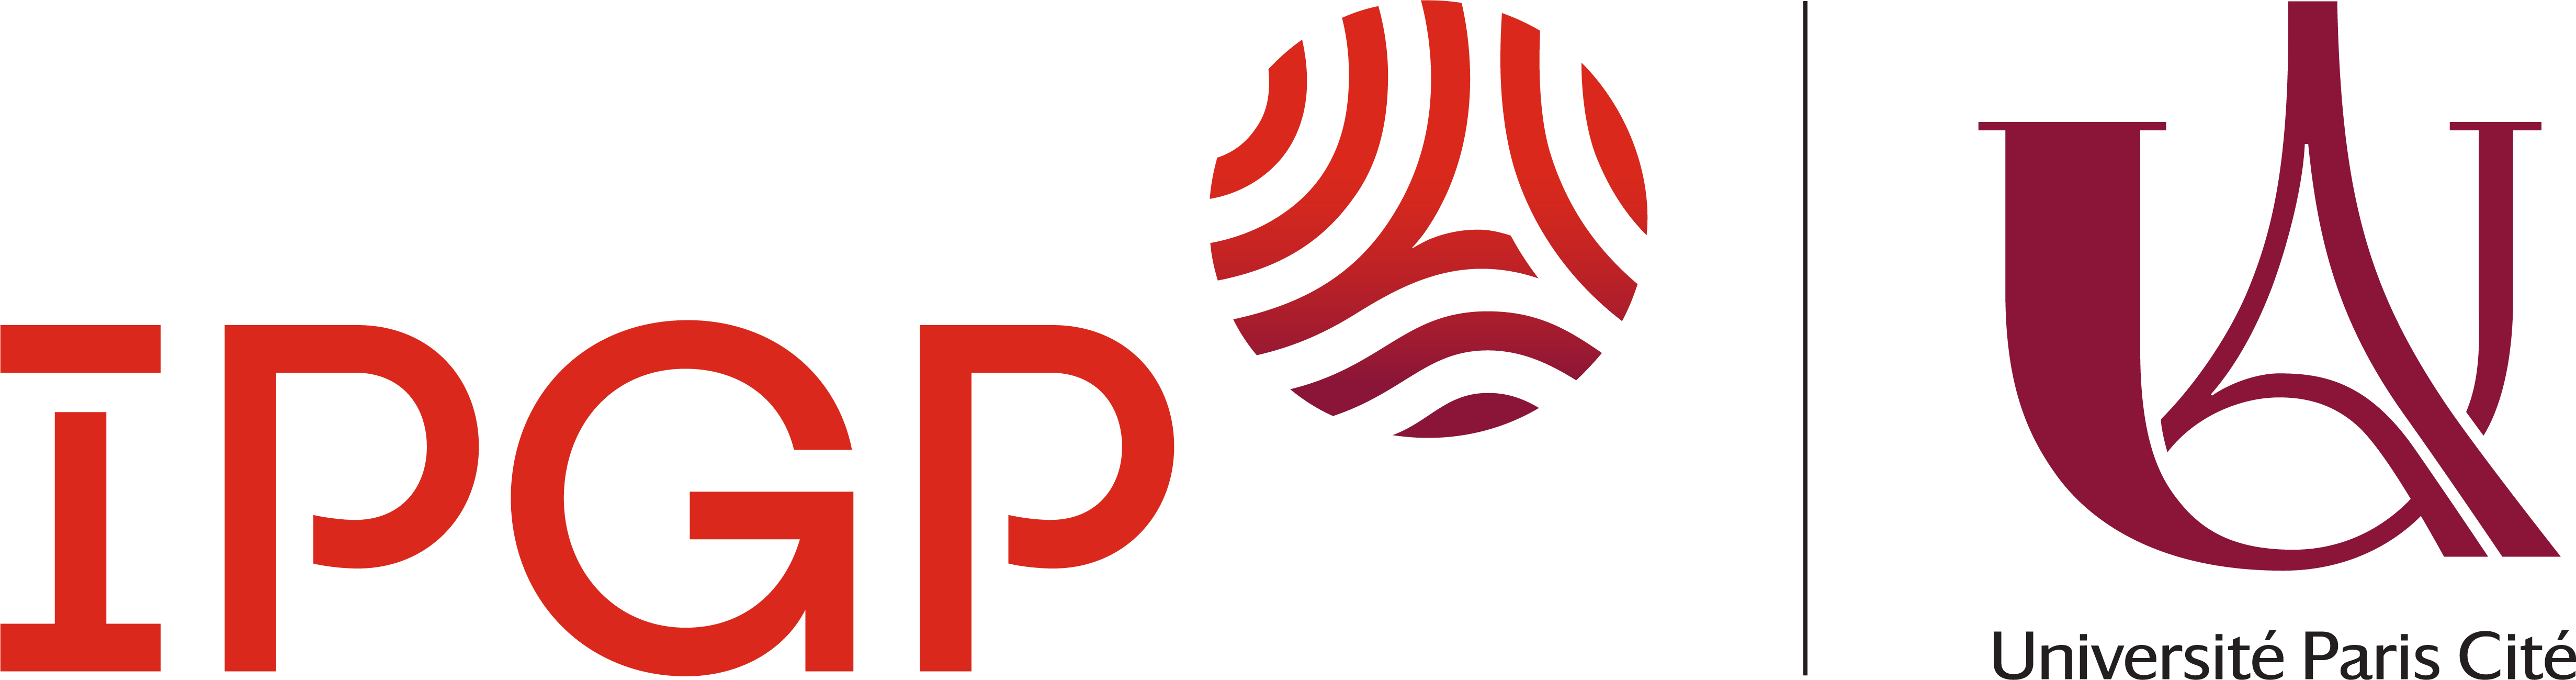 IPGP and Université Paris Cité logo